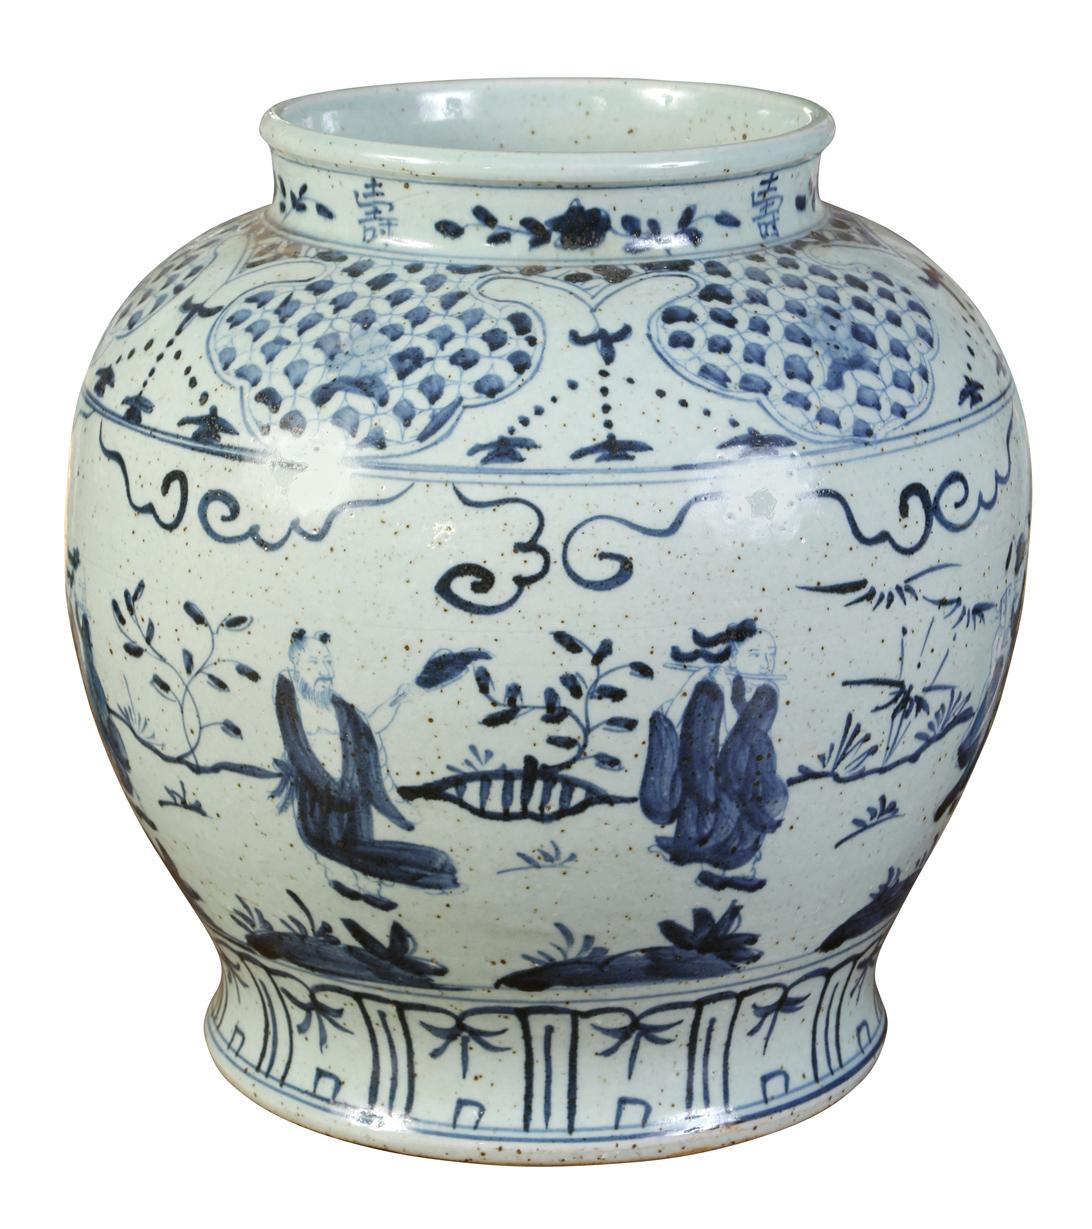 Le bleu et le blanc ne se démoderont jamais. Ce grand vase, décoré de personnages et d'accents décoratifs, est parfait comme décoration autonome ou comme vase.